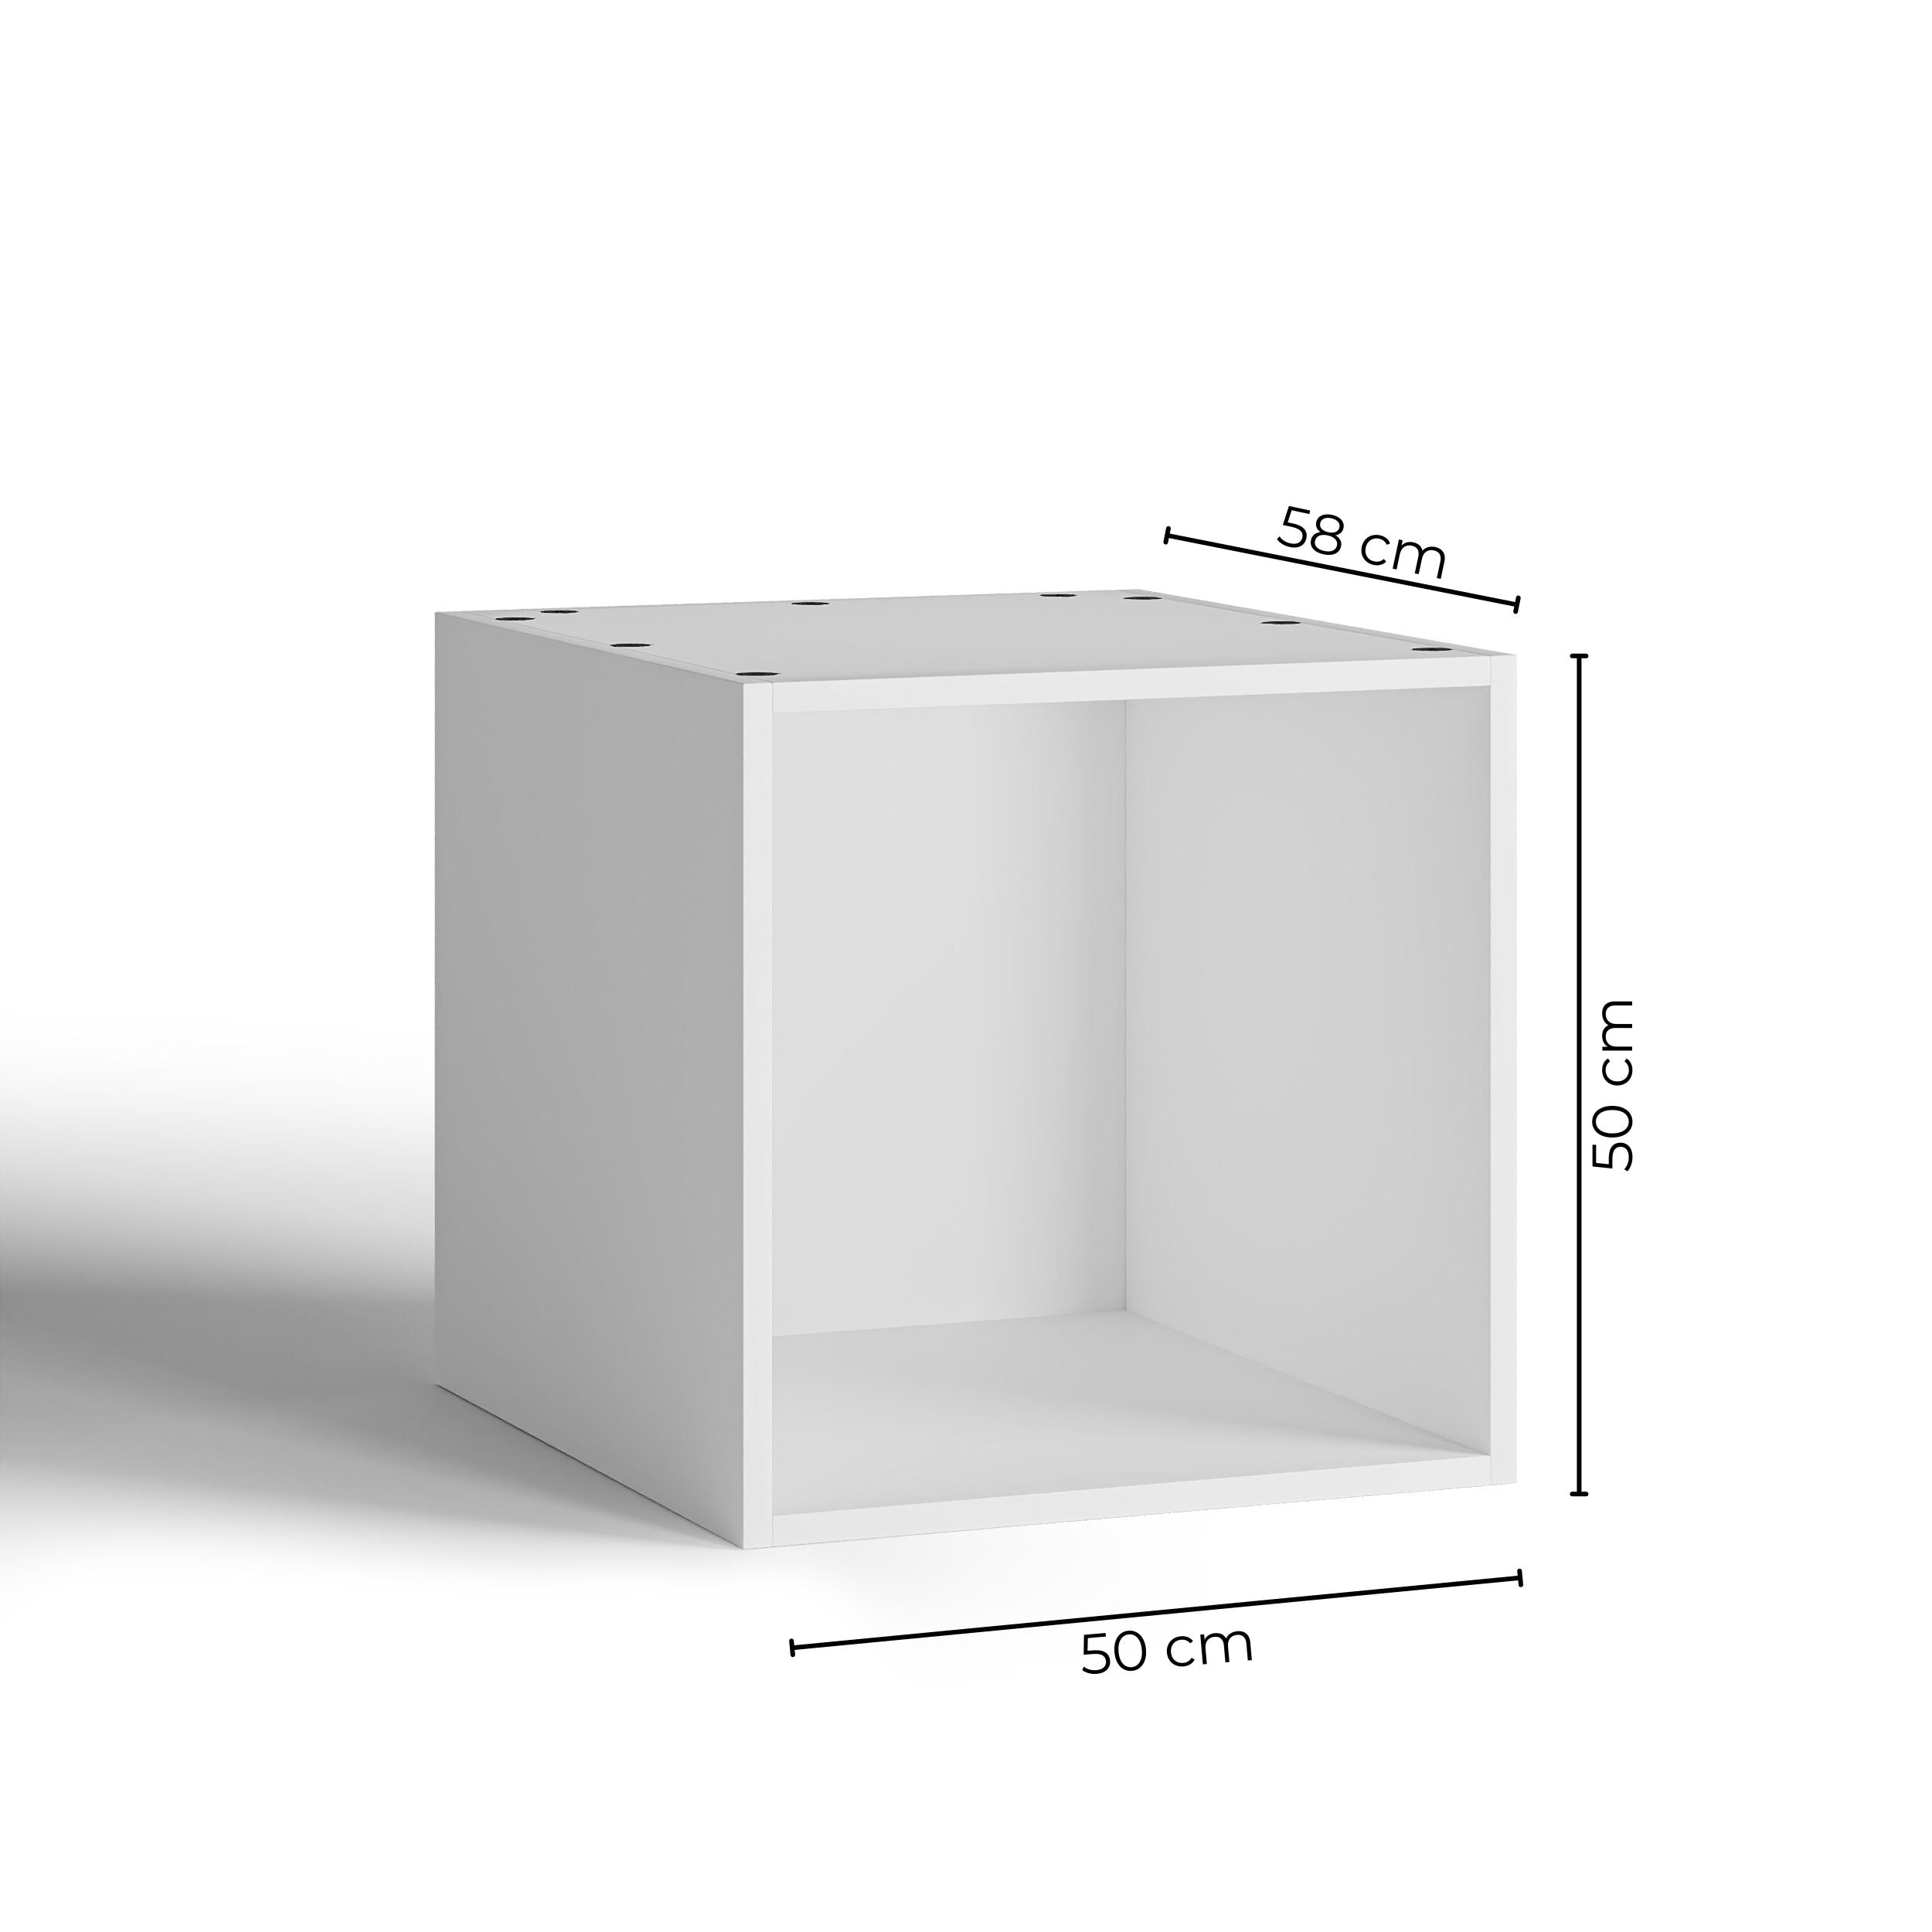 50x50 - Cabinet (58cm D) No Doors - PAX